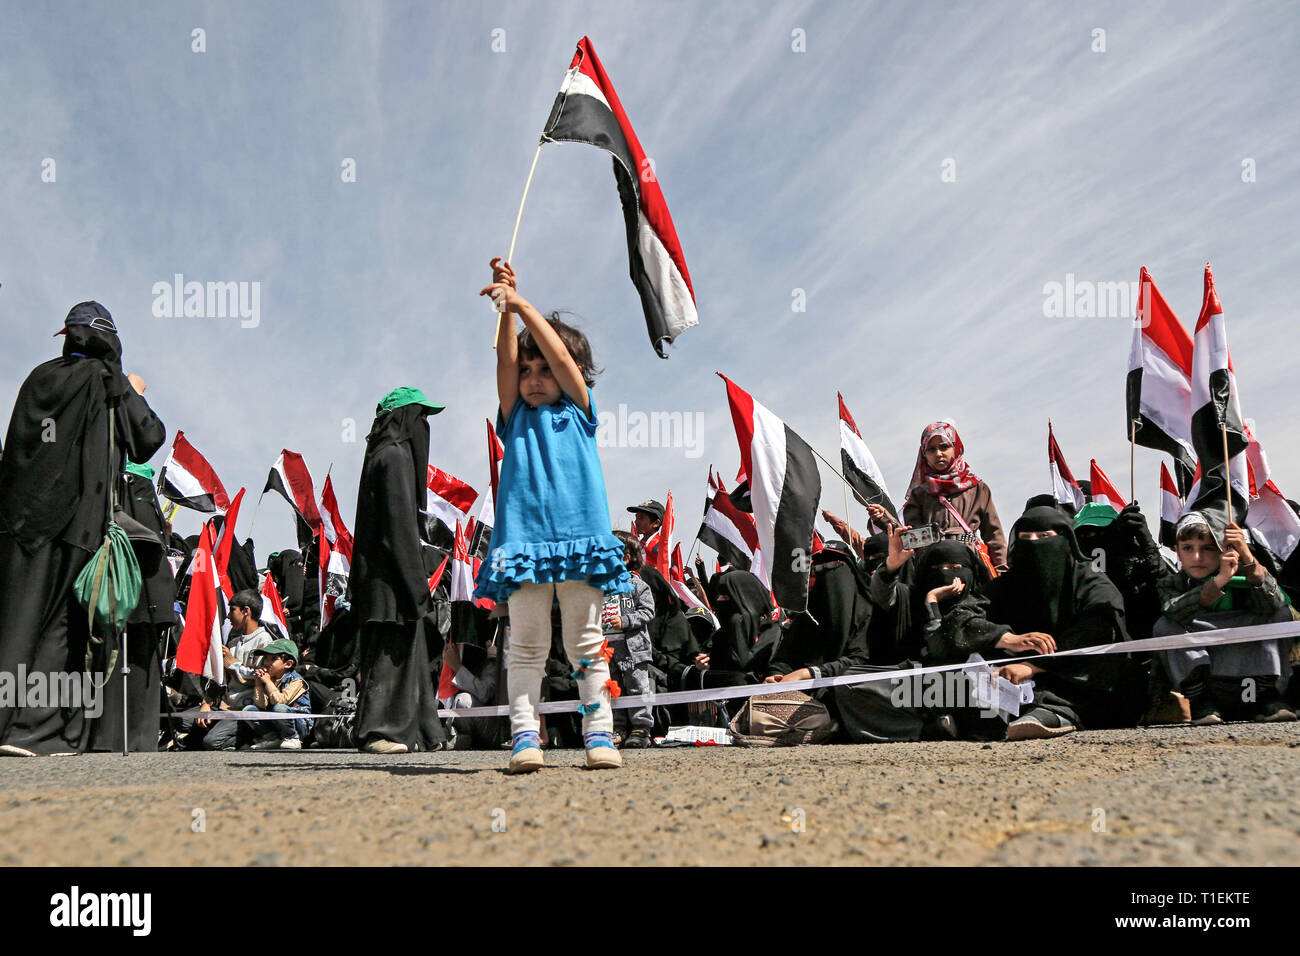 Sanaa, Yemen. 26 Mar, 2019. Una ragazza yemenita sventola la bandiera yemenita durante un rally organizzato dall'Iran-backed ribelli Houthi per commemorare il quarto anniversario della Saudi-led campagna militare in Yemen. Credito: Sami Abdulrhman/dpa/Alamy Live News Foto Stock